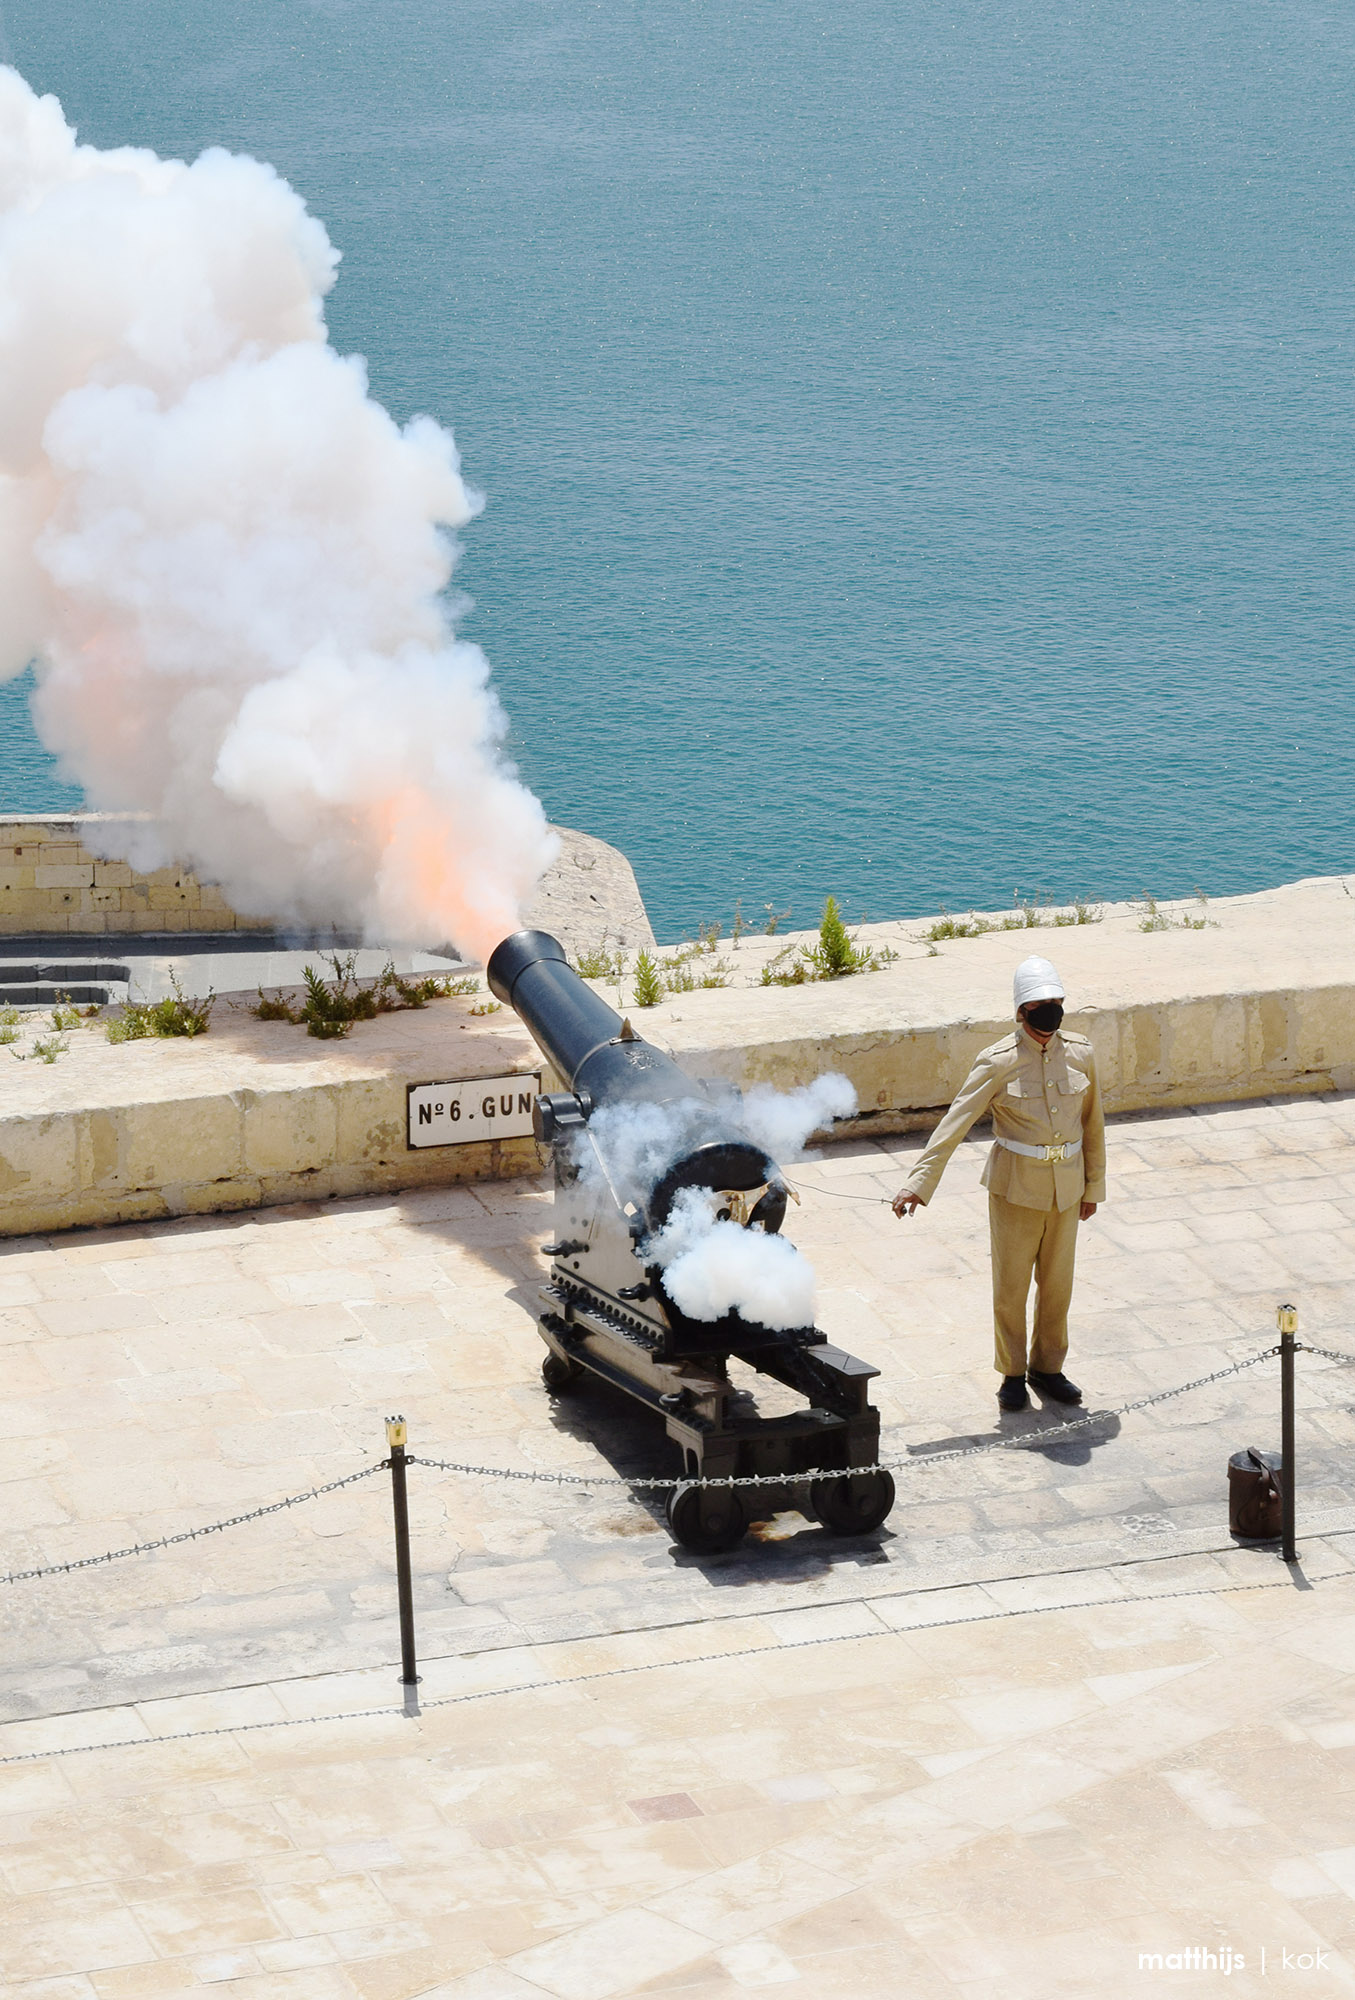 Saluting Battery, Valletta, Malta | Photo by Matthijs Kok